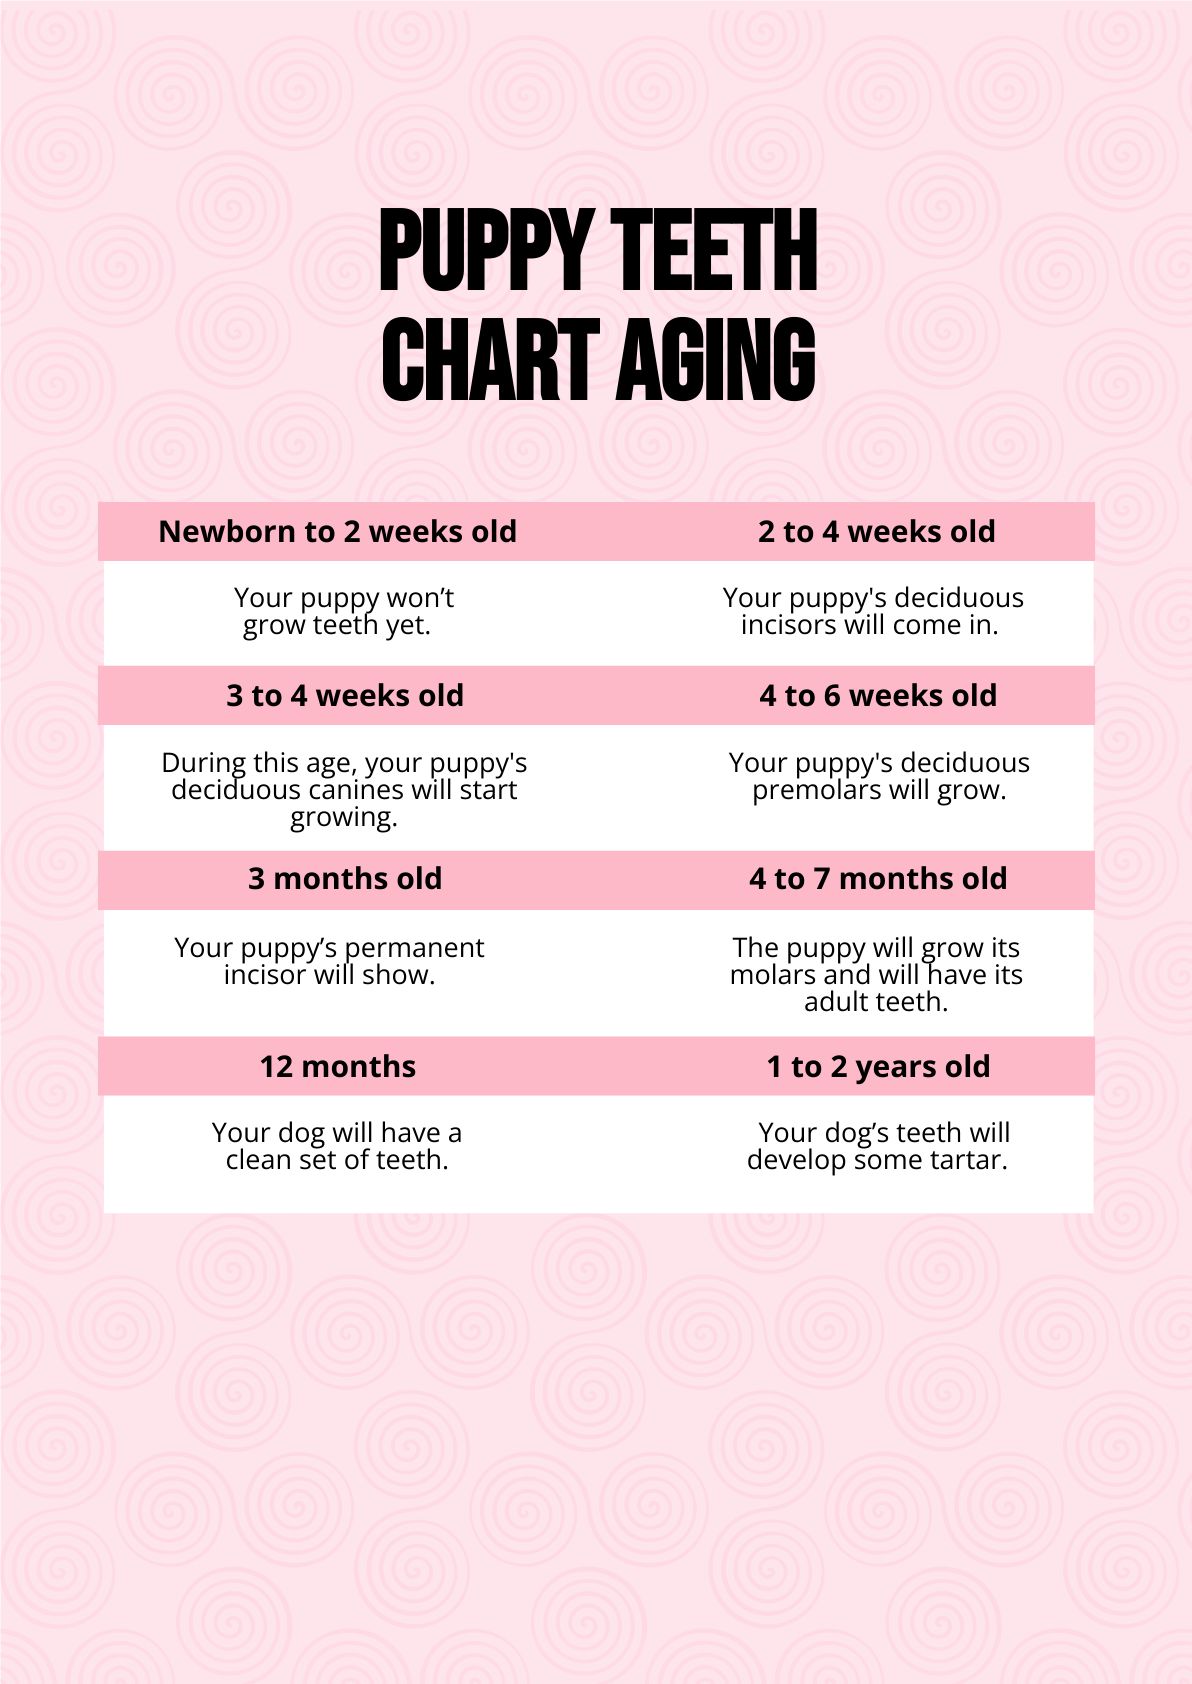 Free Puppy Teeth Chart Aging PDF